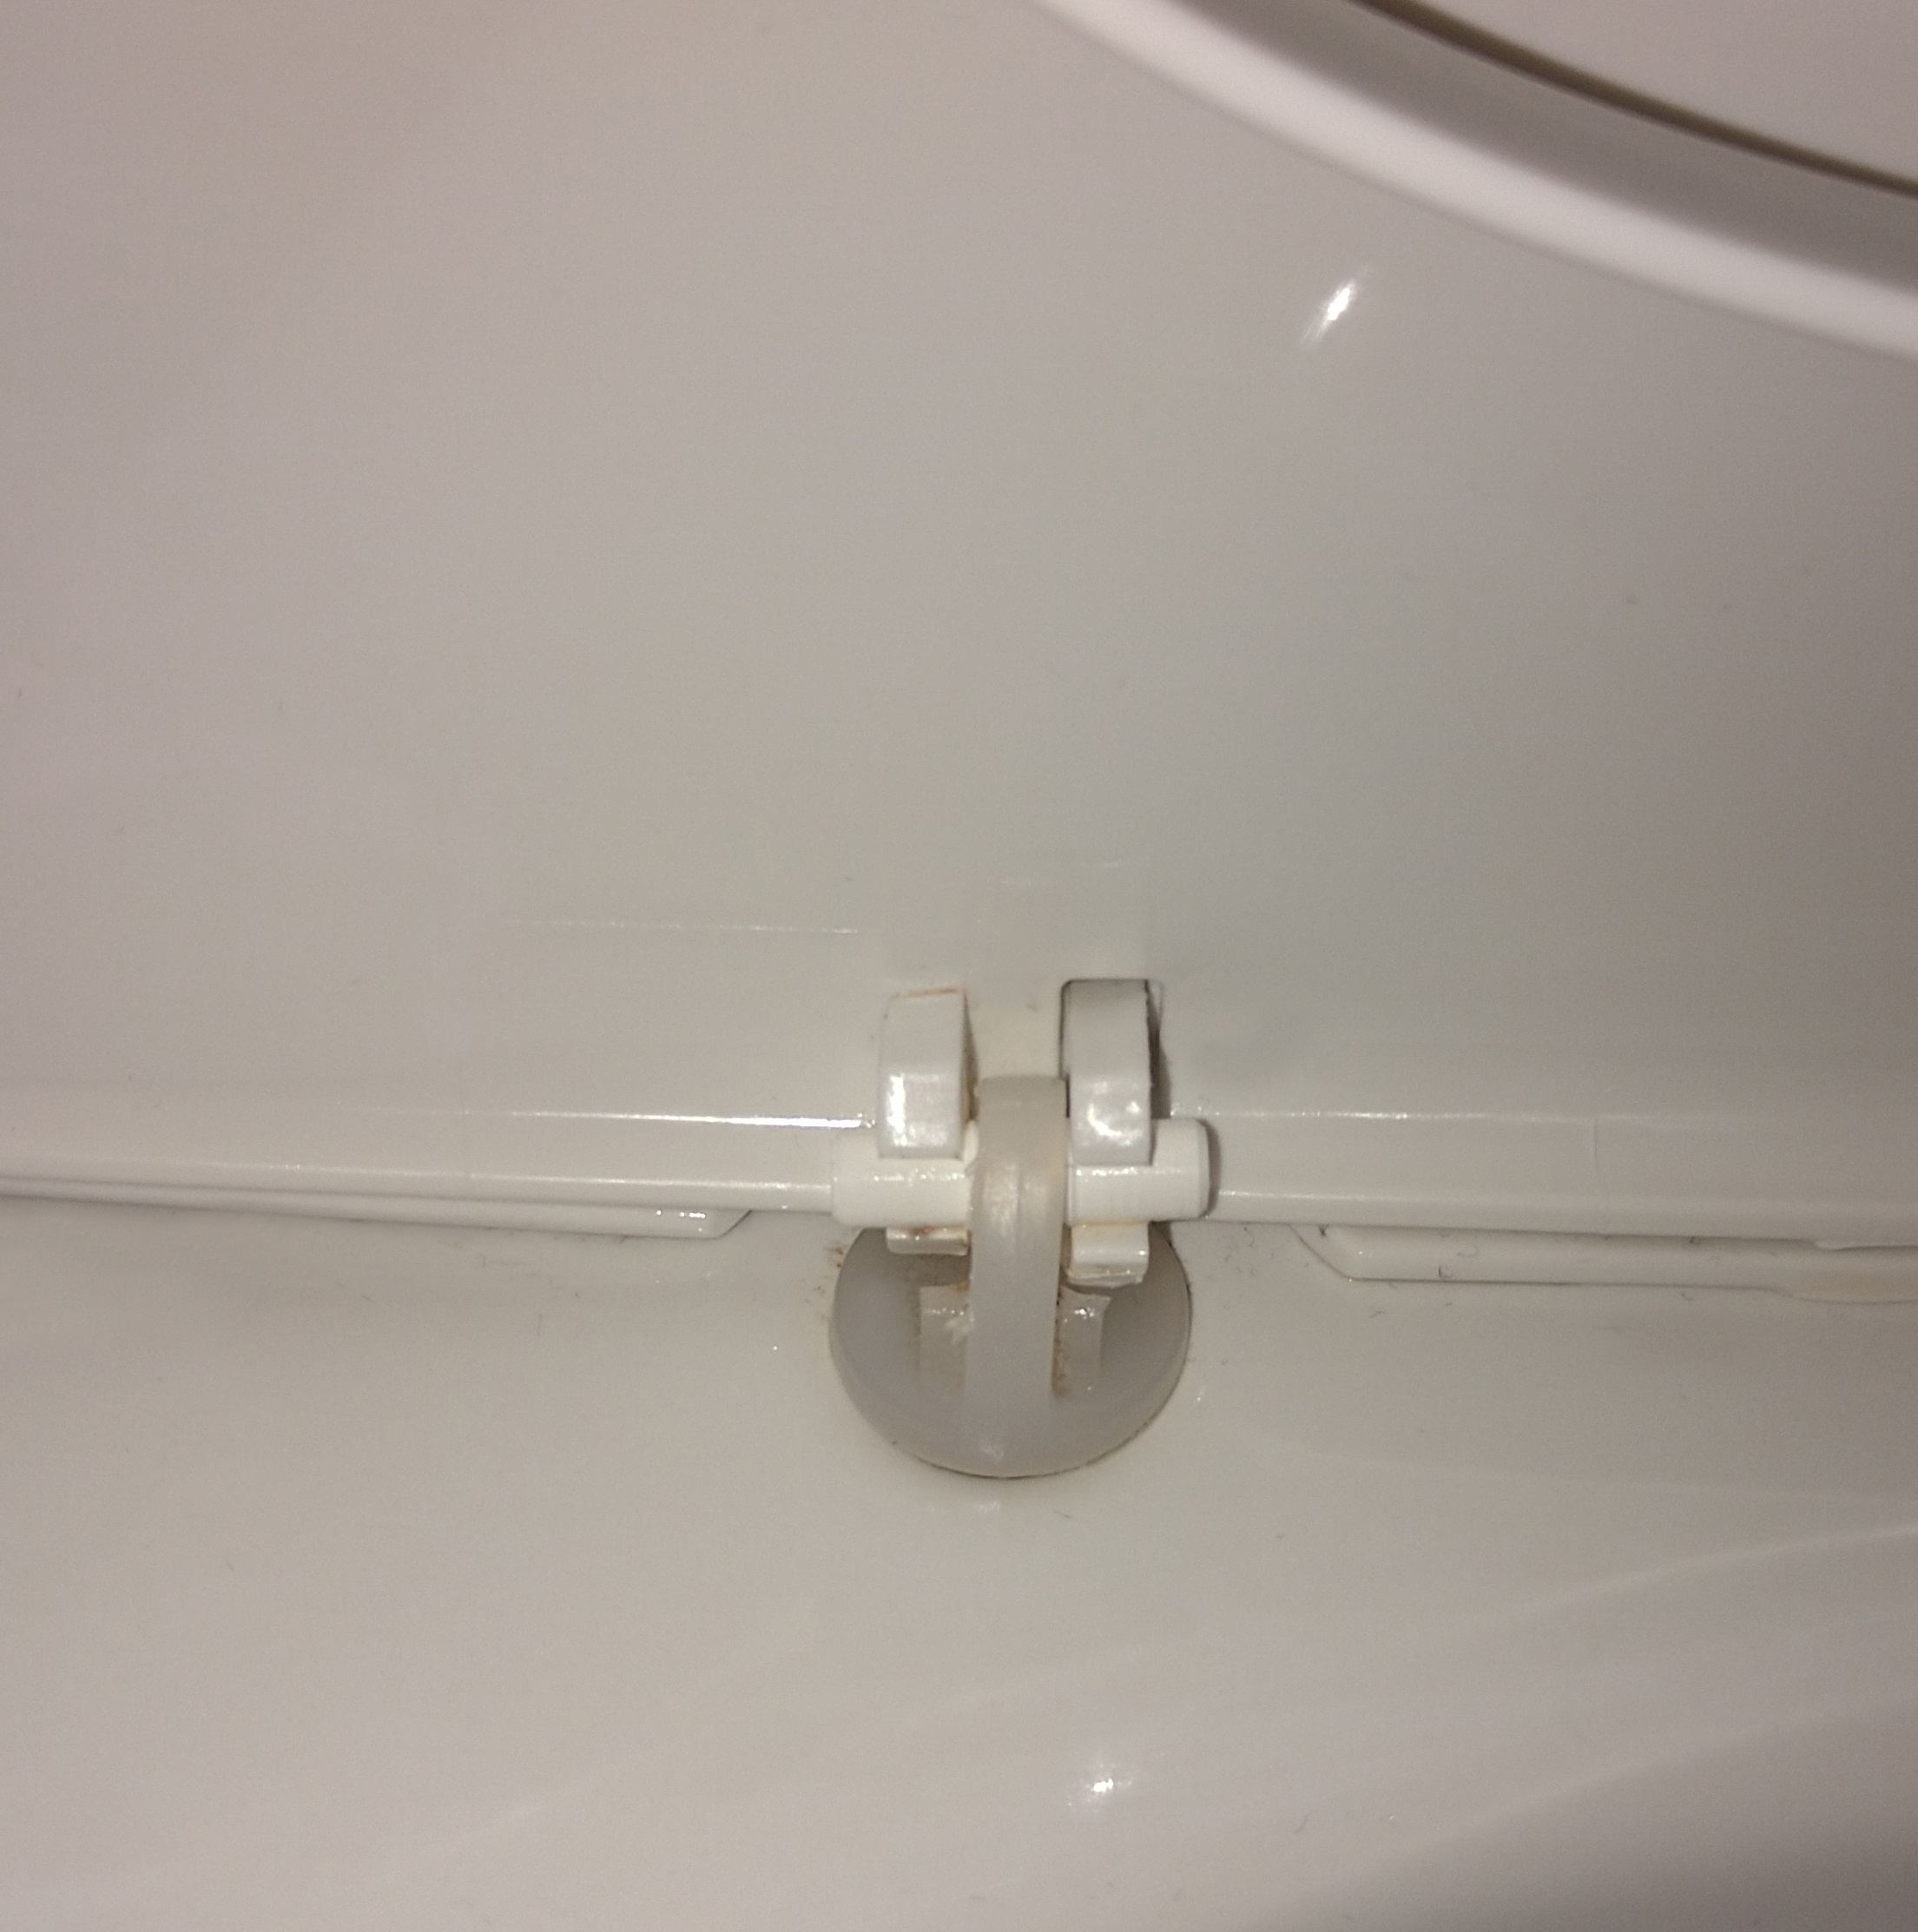 Toilett seat pin